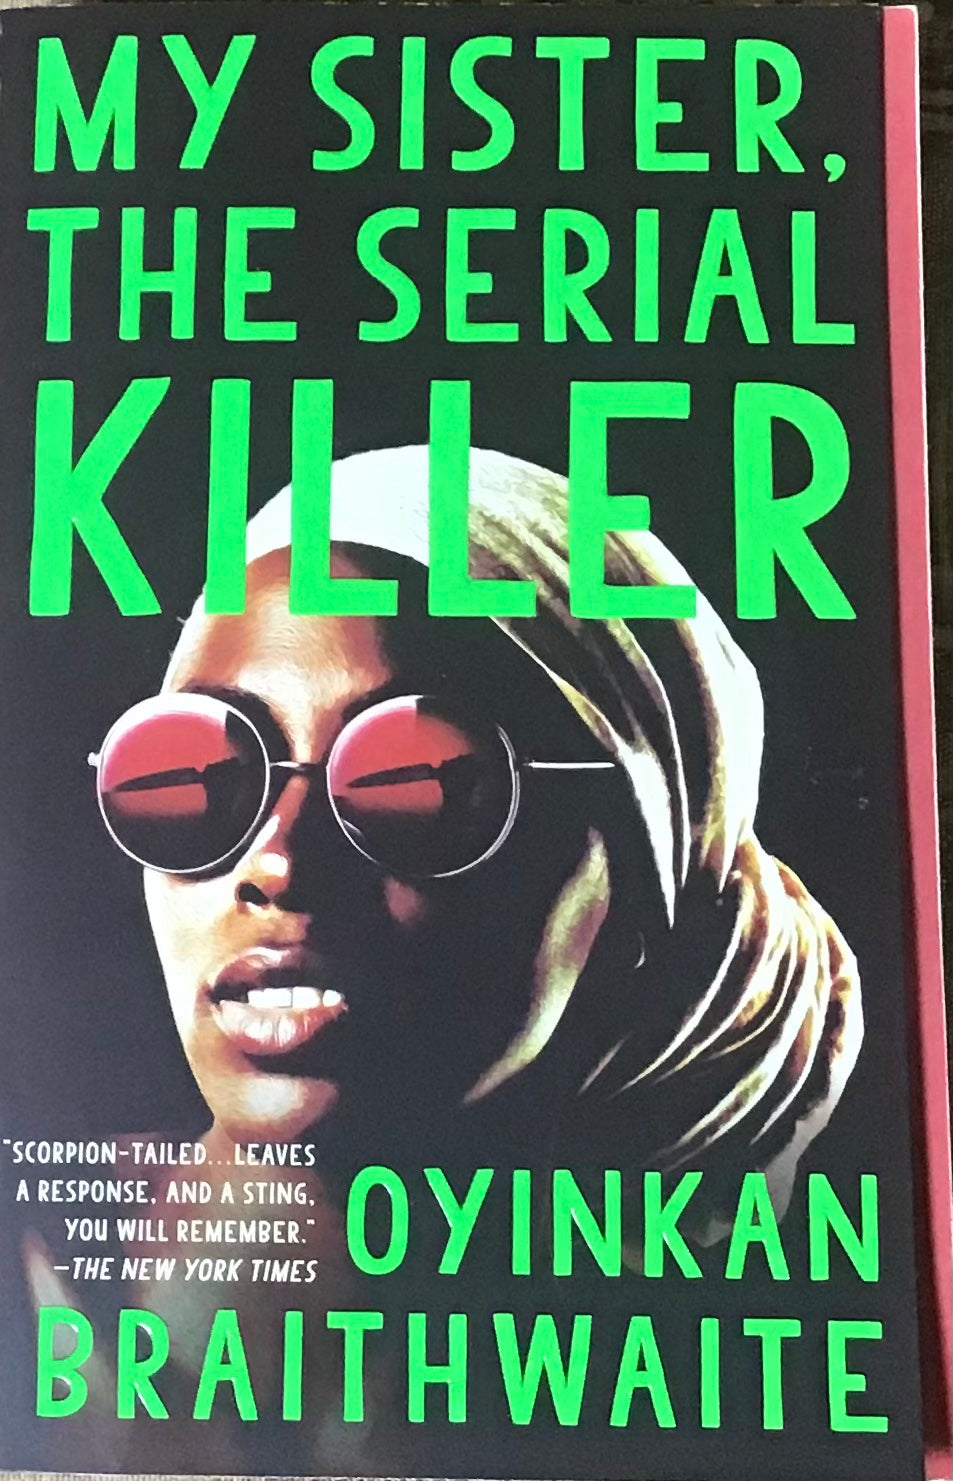 My Sister The Serial Killer, Oyinkan Braithwaite